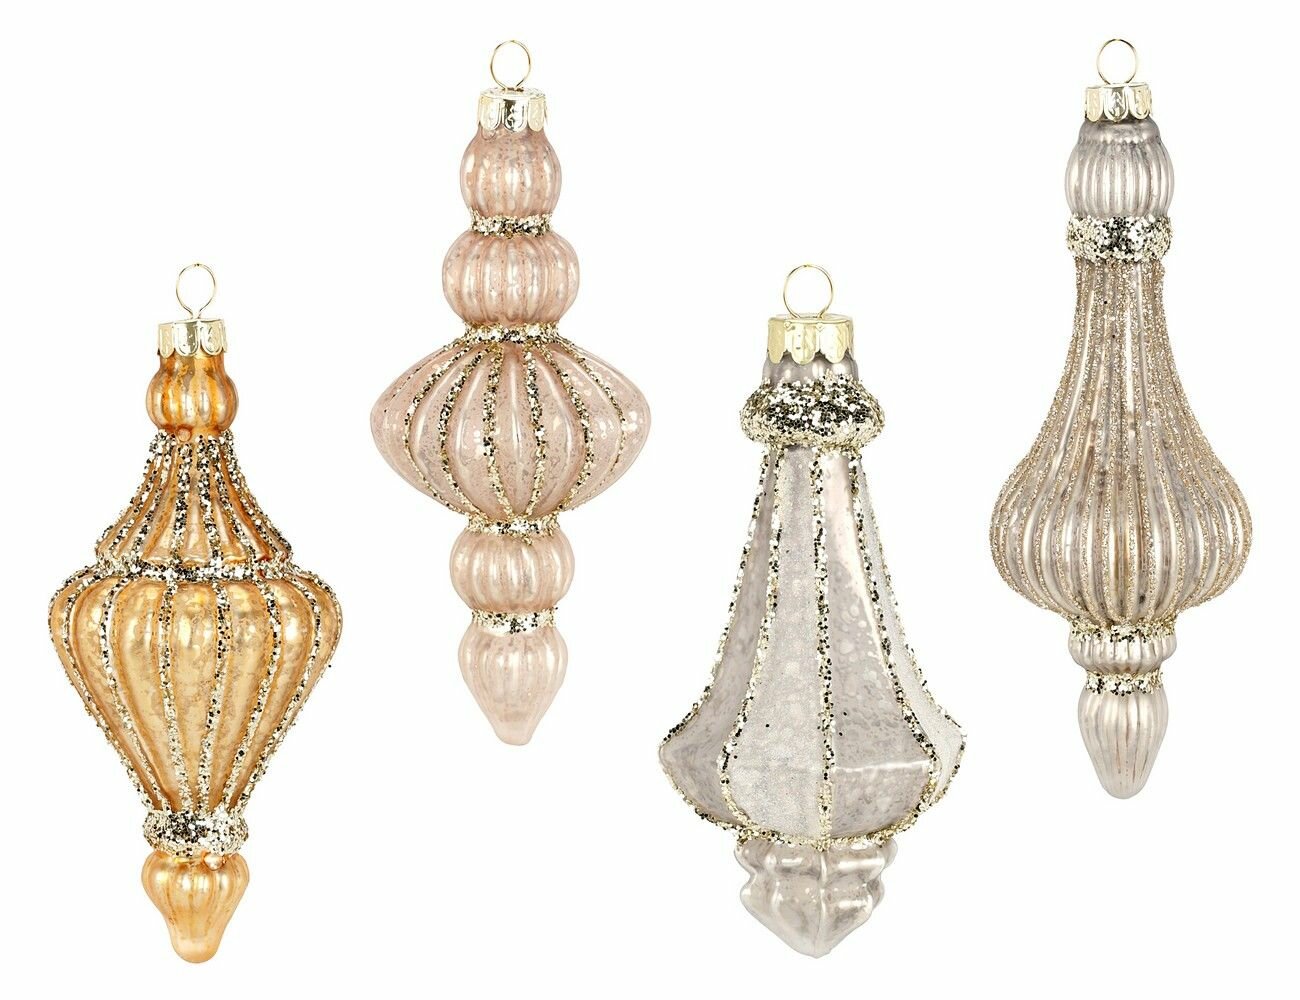 Набор ёлочных украшений беатриче, стекло, 14-18 см, 8 шт, Koopman International ABT632780-набор